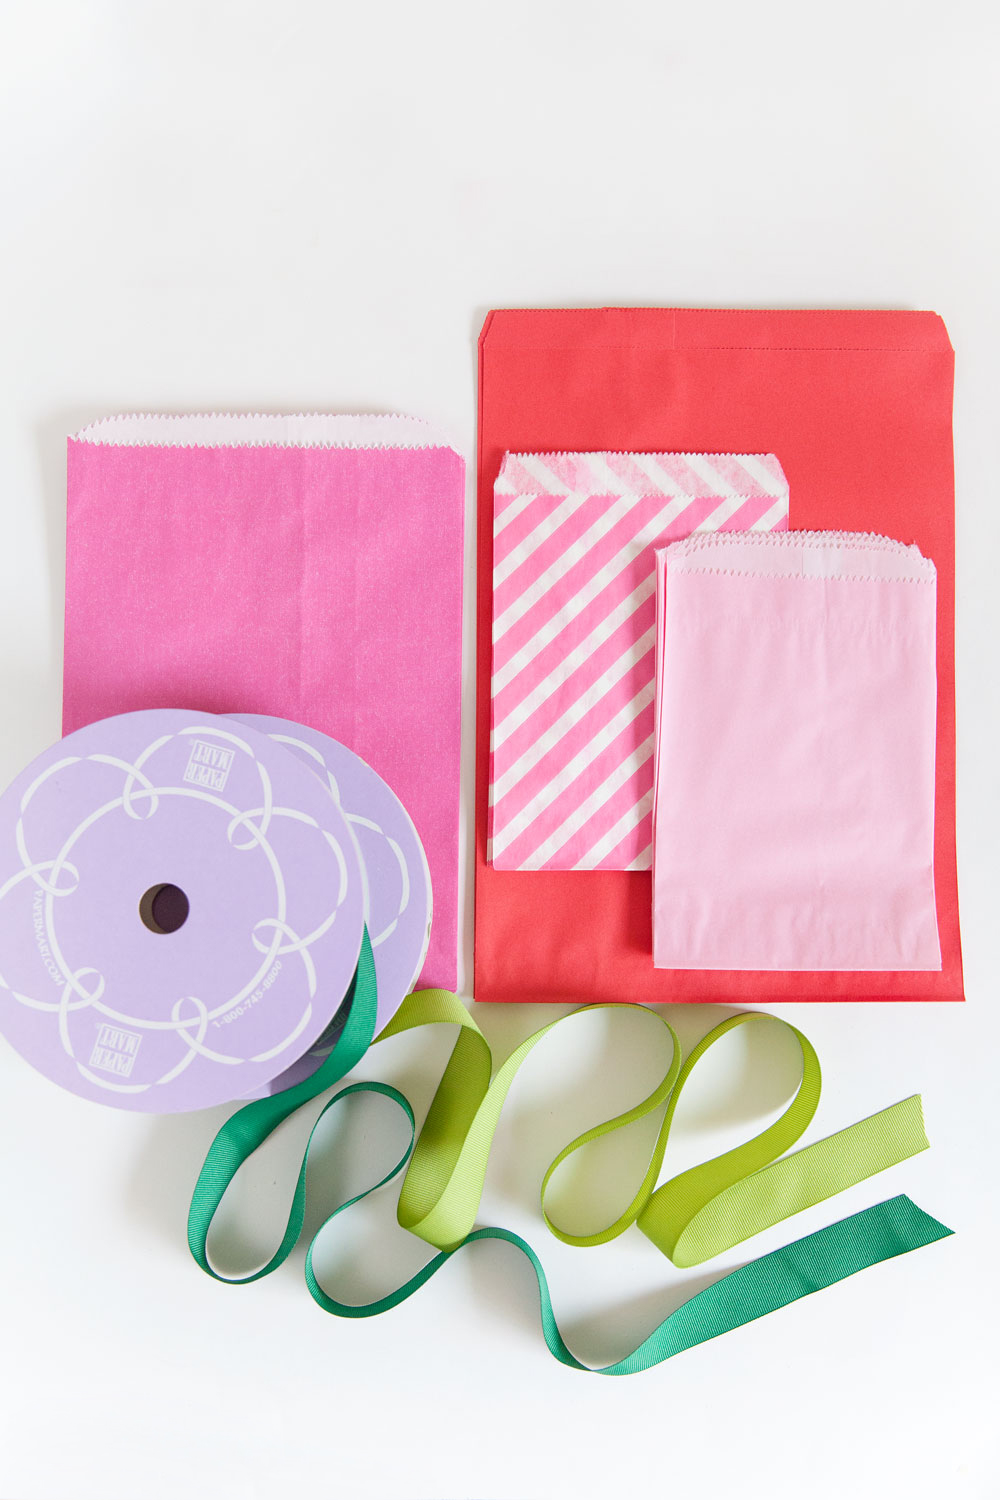 materiales necesarios para hacer manualidades con reciclaje, calendario navideño DIY hecho de bolsas de papel 